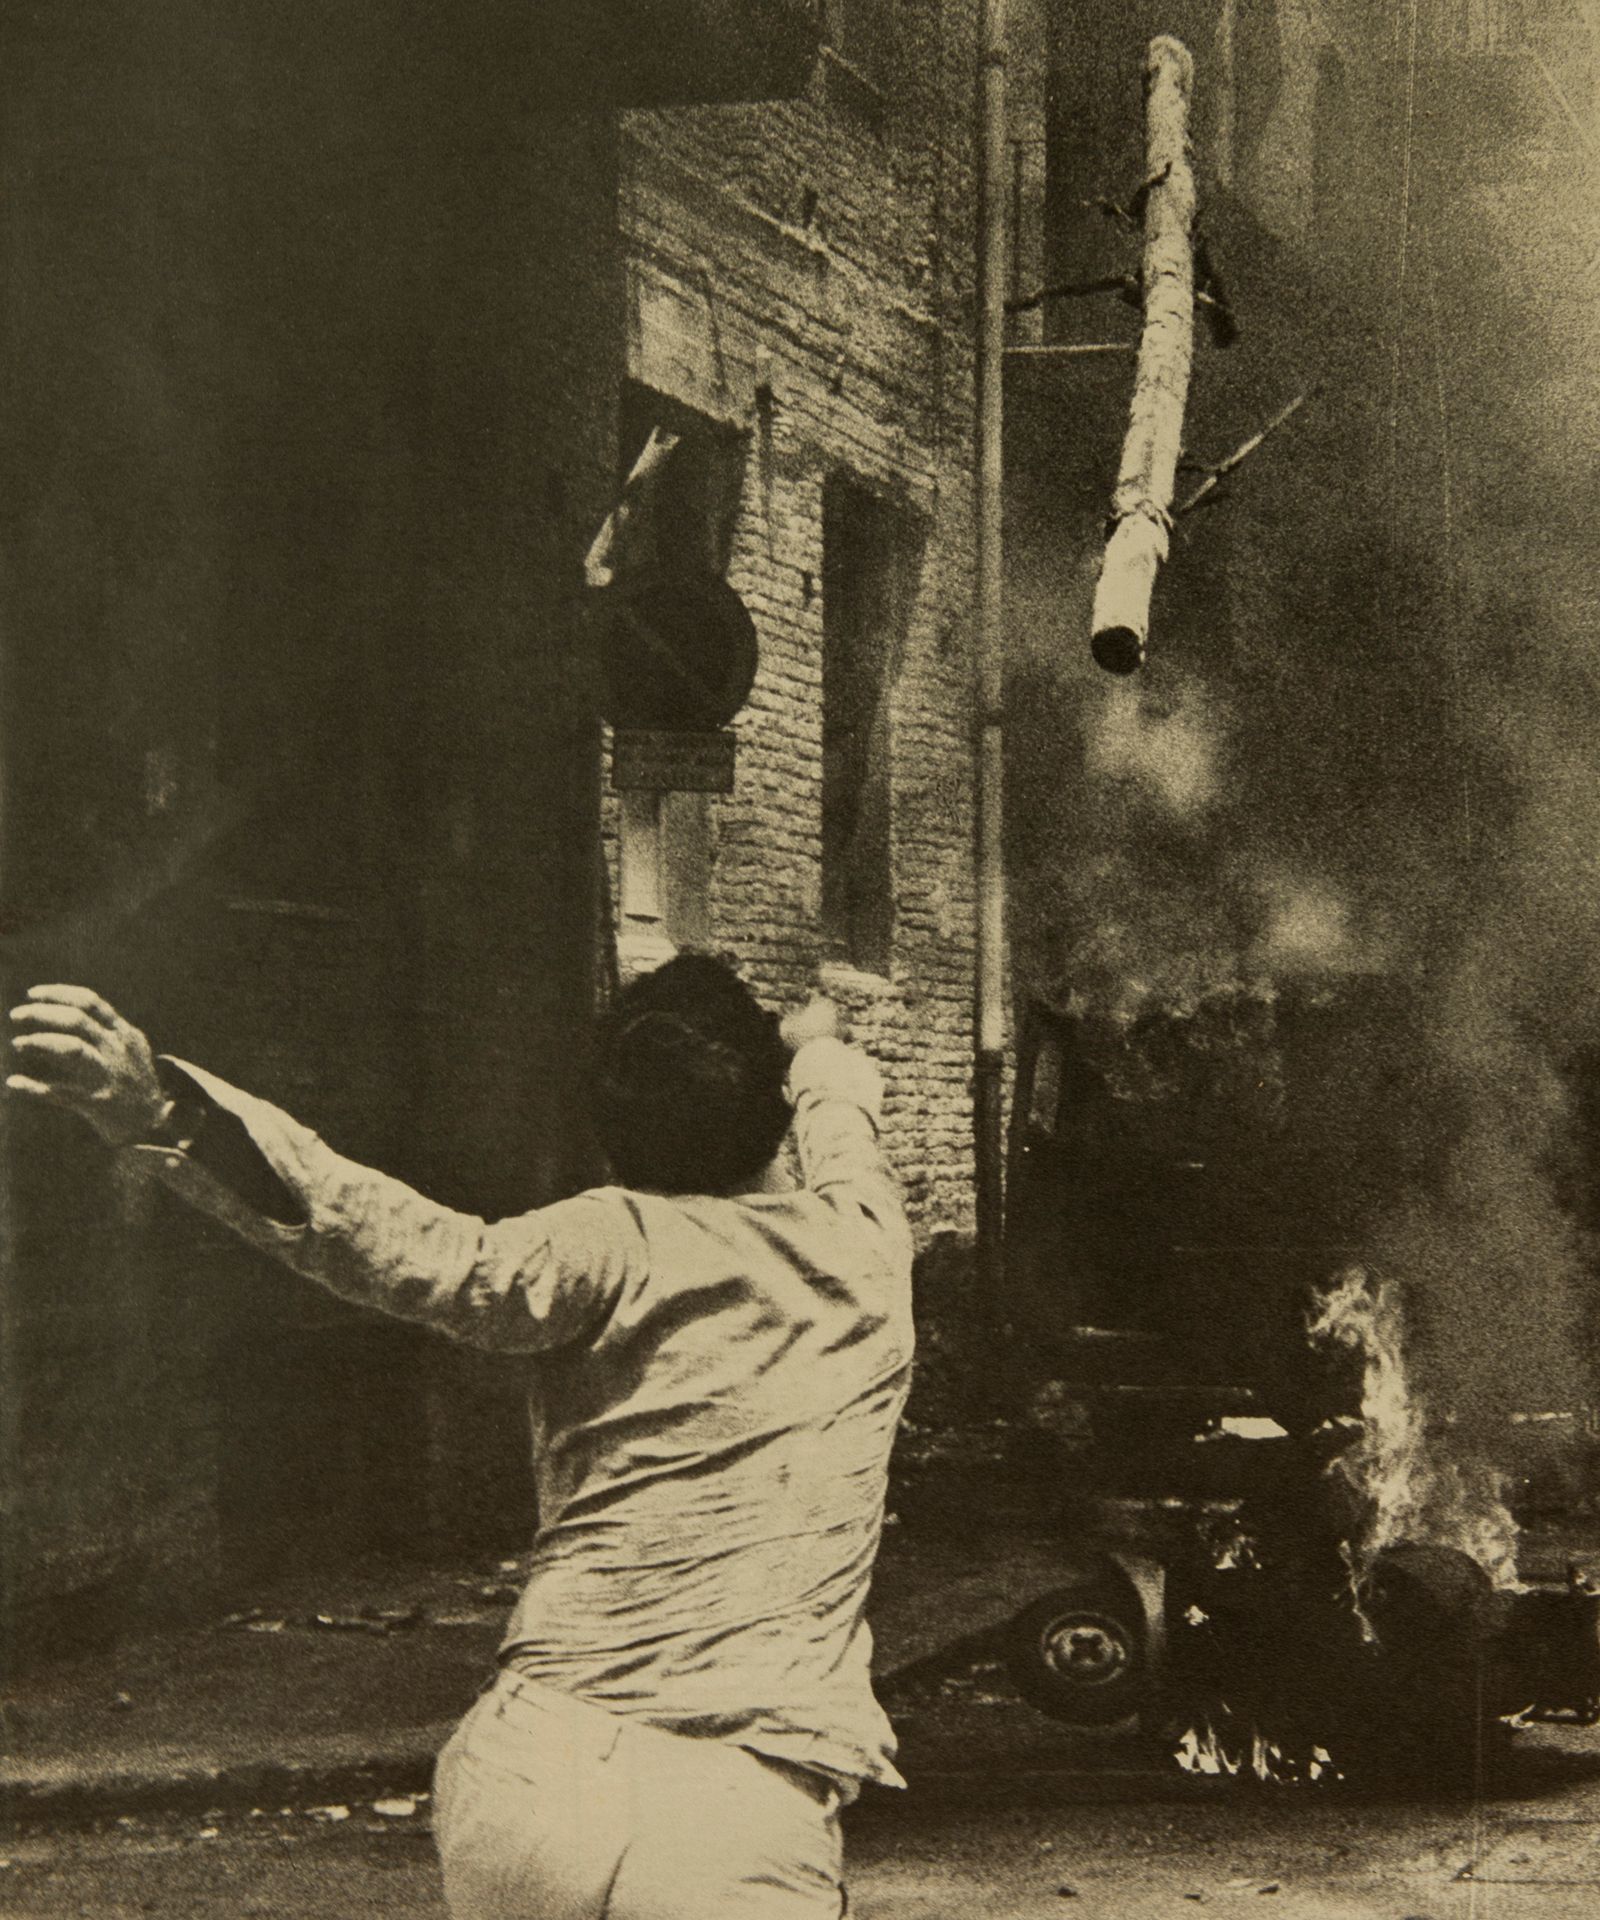 © Filippo Menichetti Martin Errichiello - Image of clashes in Reggio Calabria taken from the Italian magazine “Annali d’Italia”, 1971.